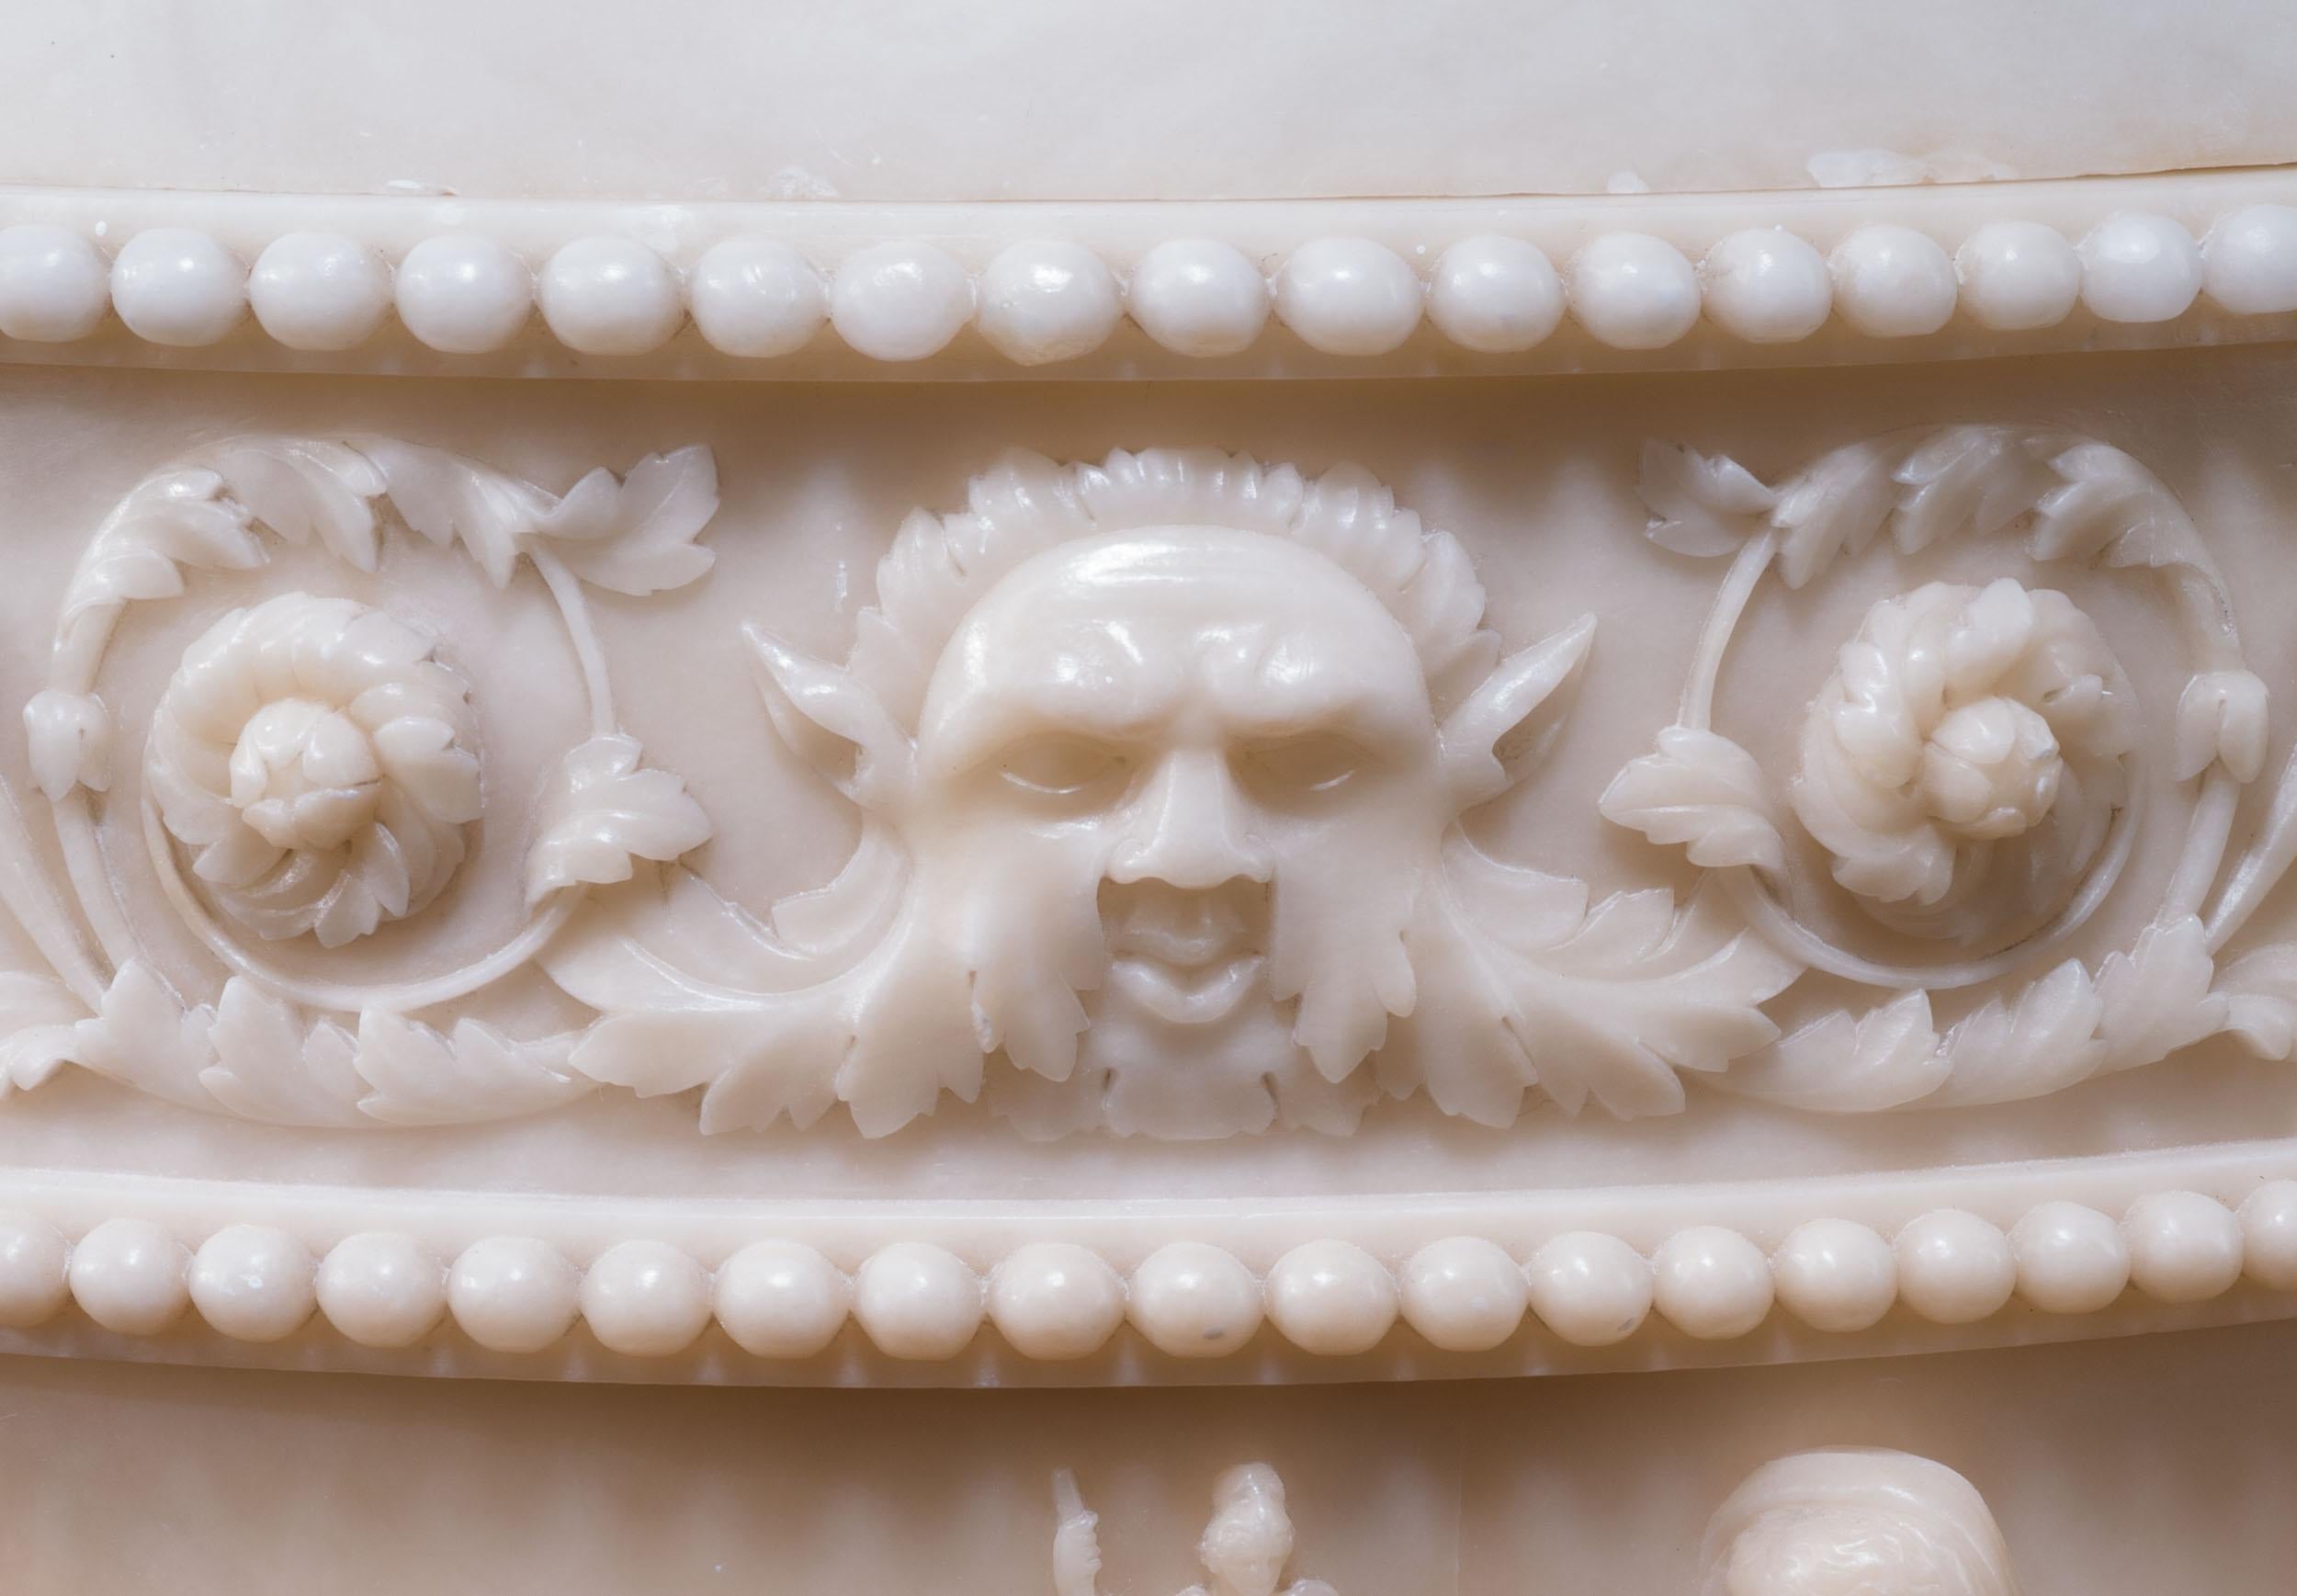 Exceptionnelle paire de grands vases à couvercle en albâtre à la manière de Lorenzo Bartolini (1777-1850). Les urnes à couvercle de forme balustre sont finement sculptées dans de l'albâtre translucide. Le corps du vase représente des scènes